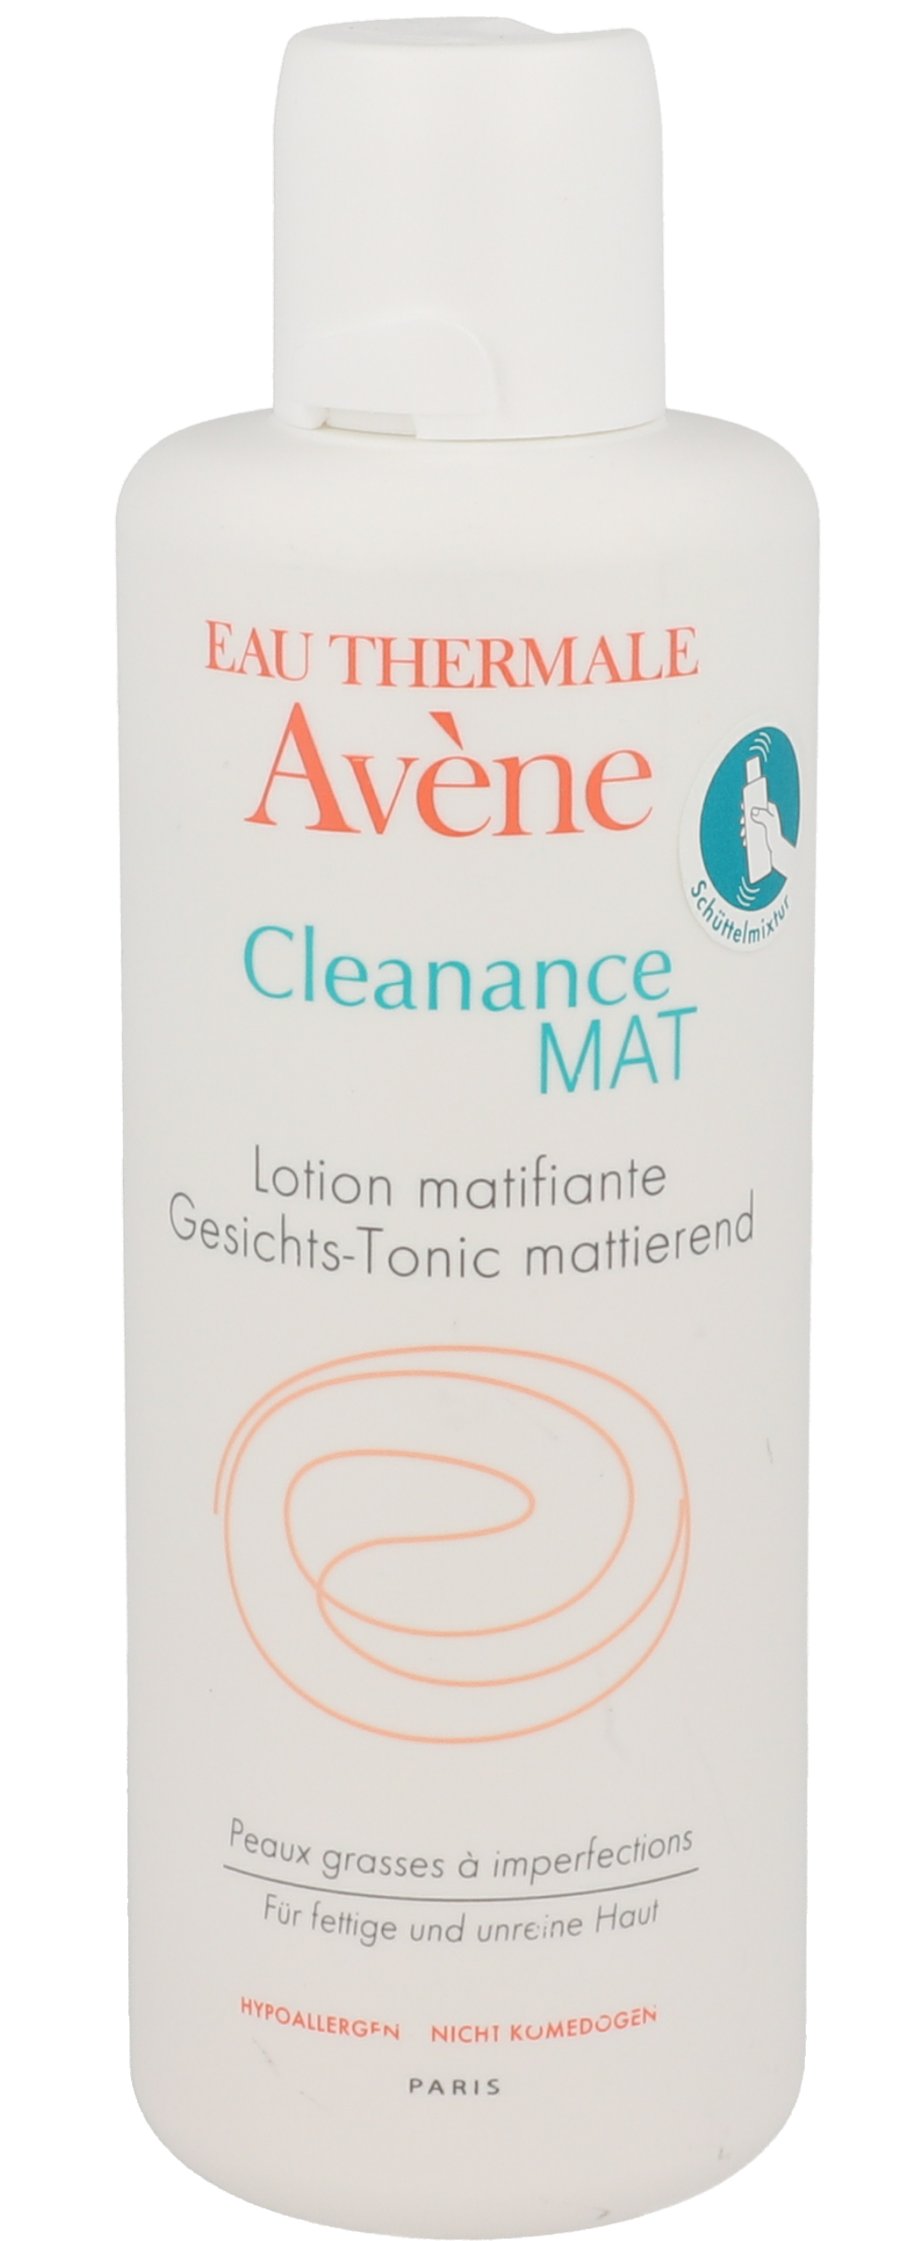 AVENE Cleanance MAT Gesichts-Tonic mattierend